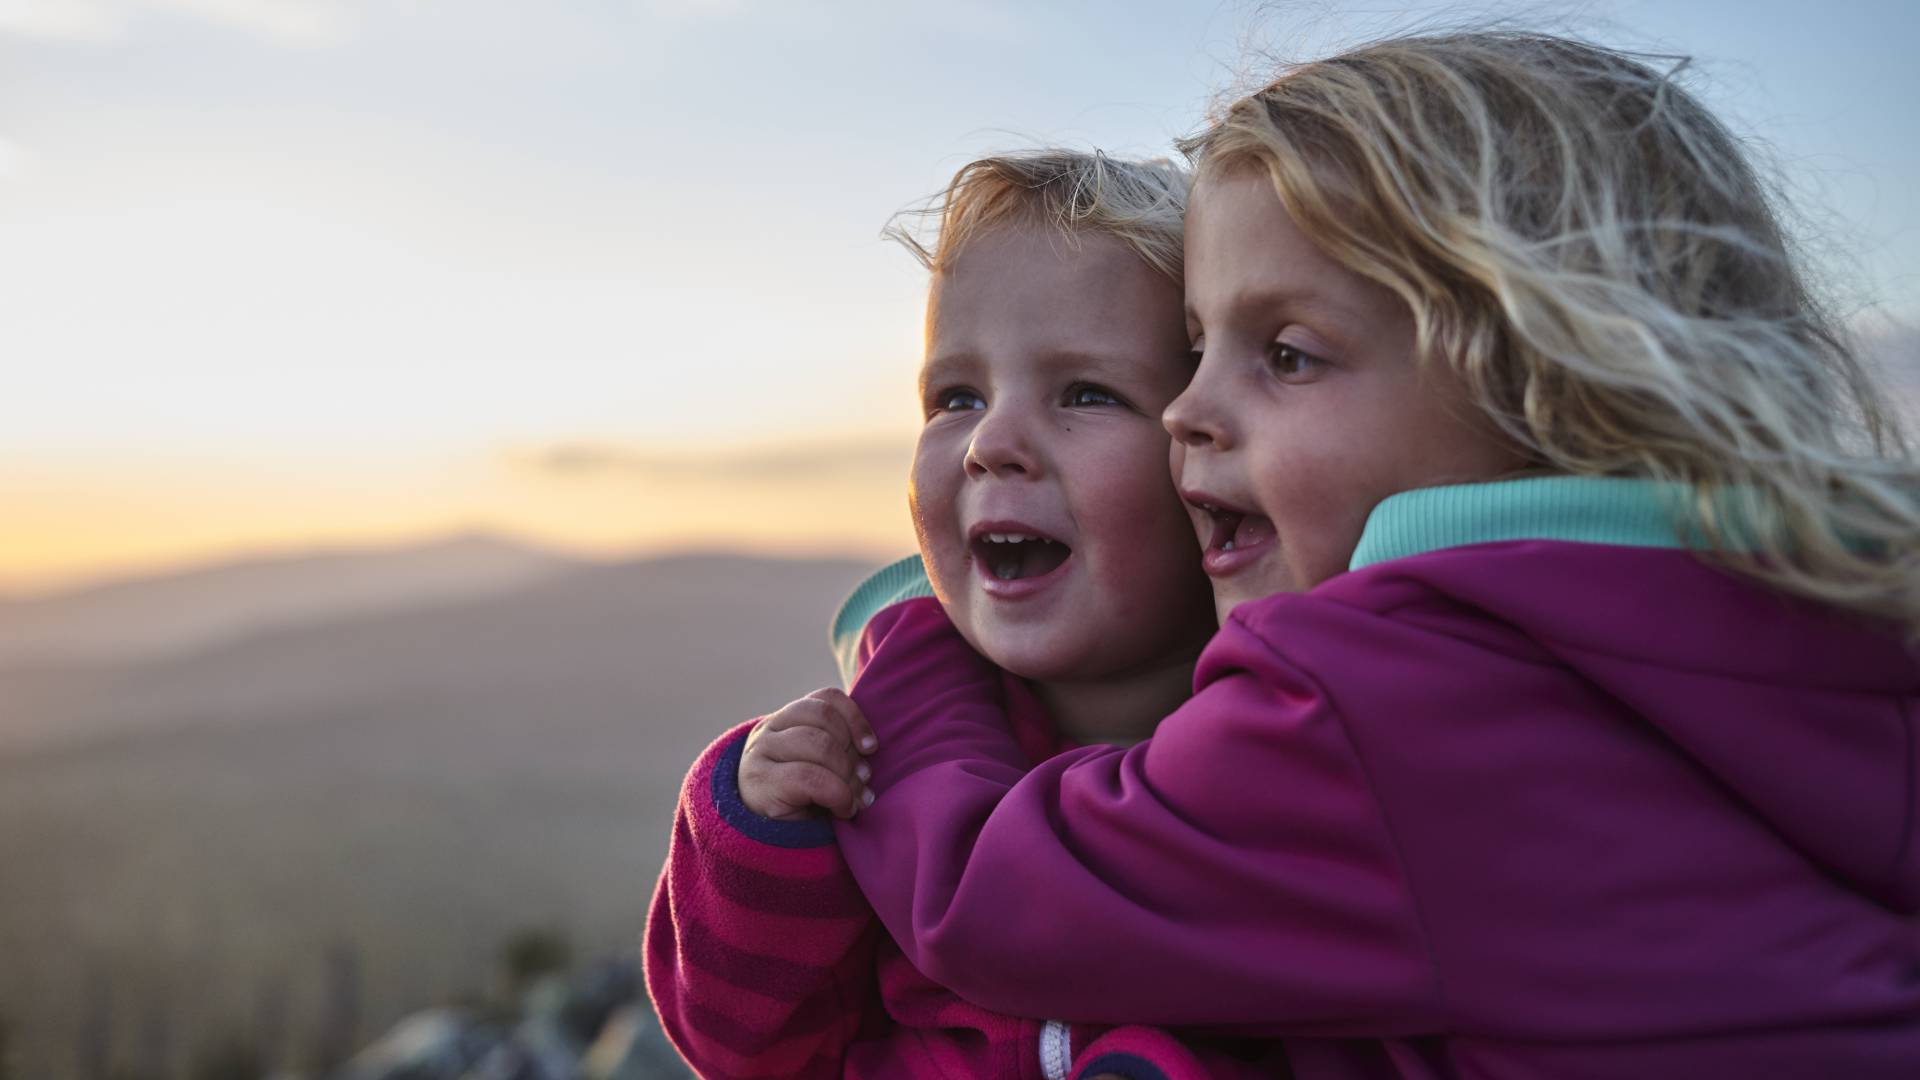 Kinder blicken vom Berg in die Landschaft